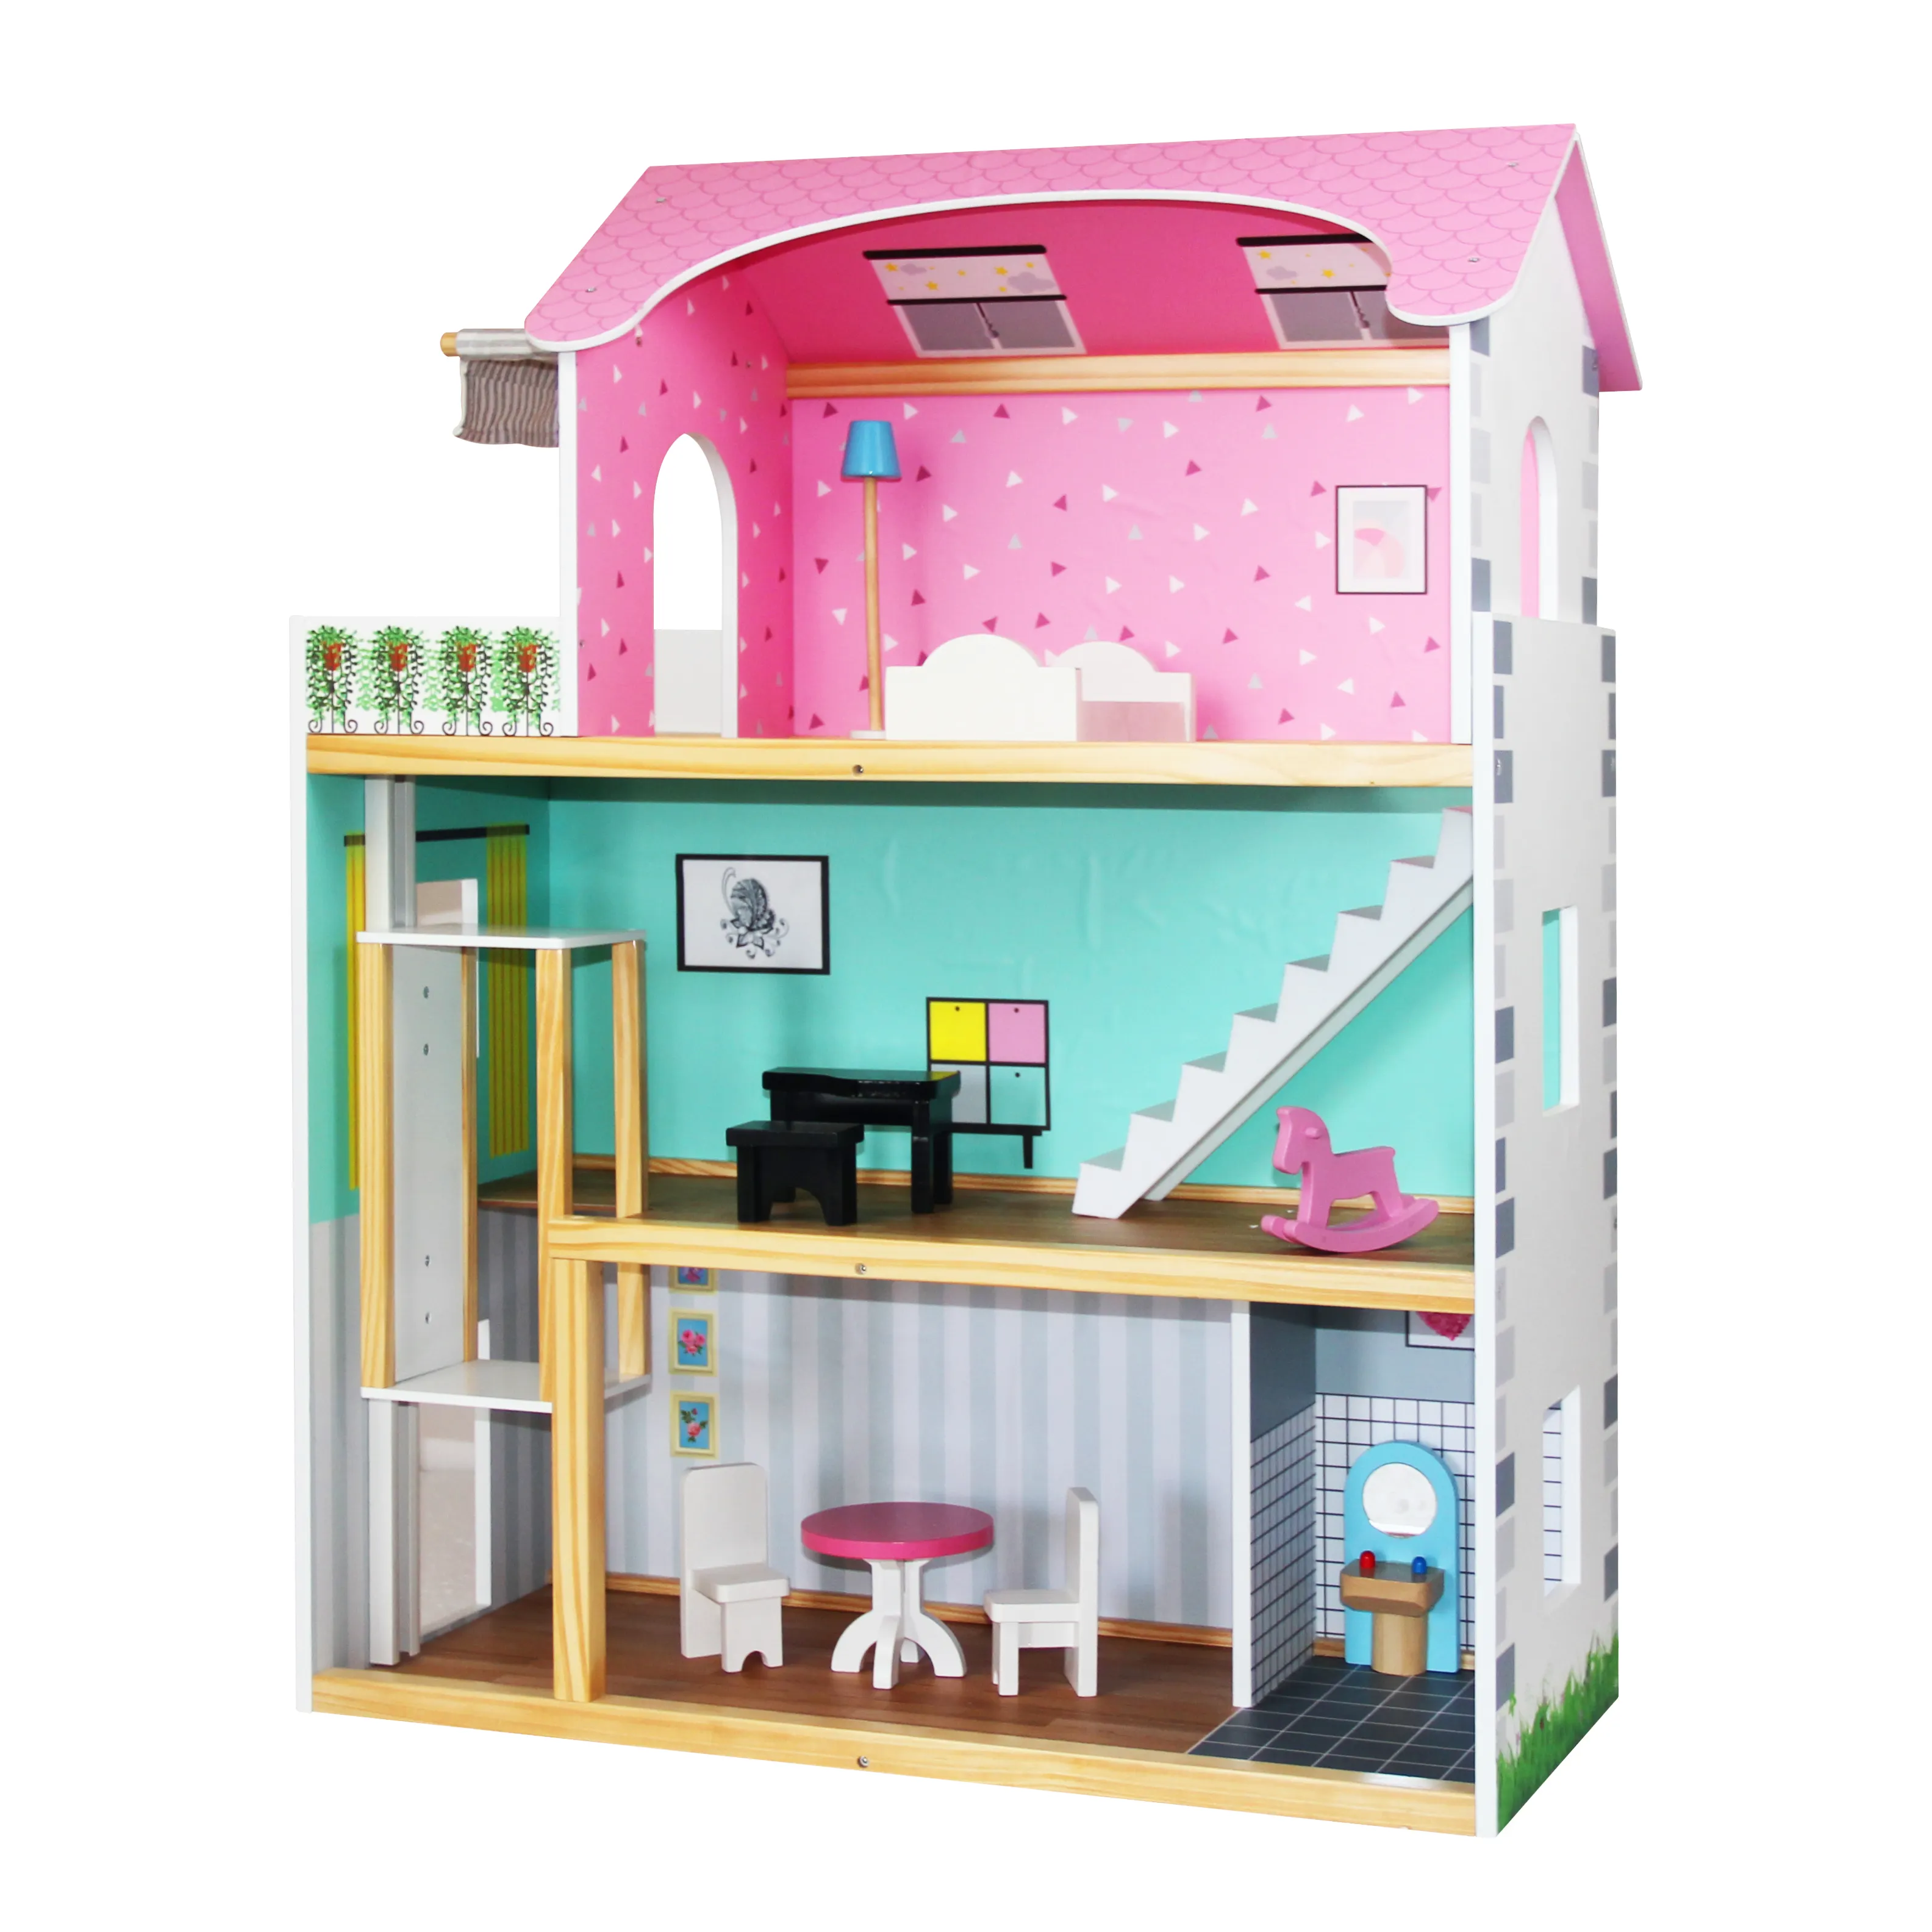 Princesa casa de muñecas juego de imaginación sueño DIY muebles juguetes niños bebé casas de muñecas de madera recién llegados juguetes para niños 2023 para niñas